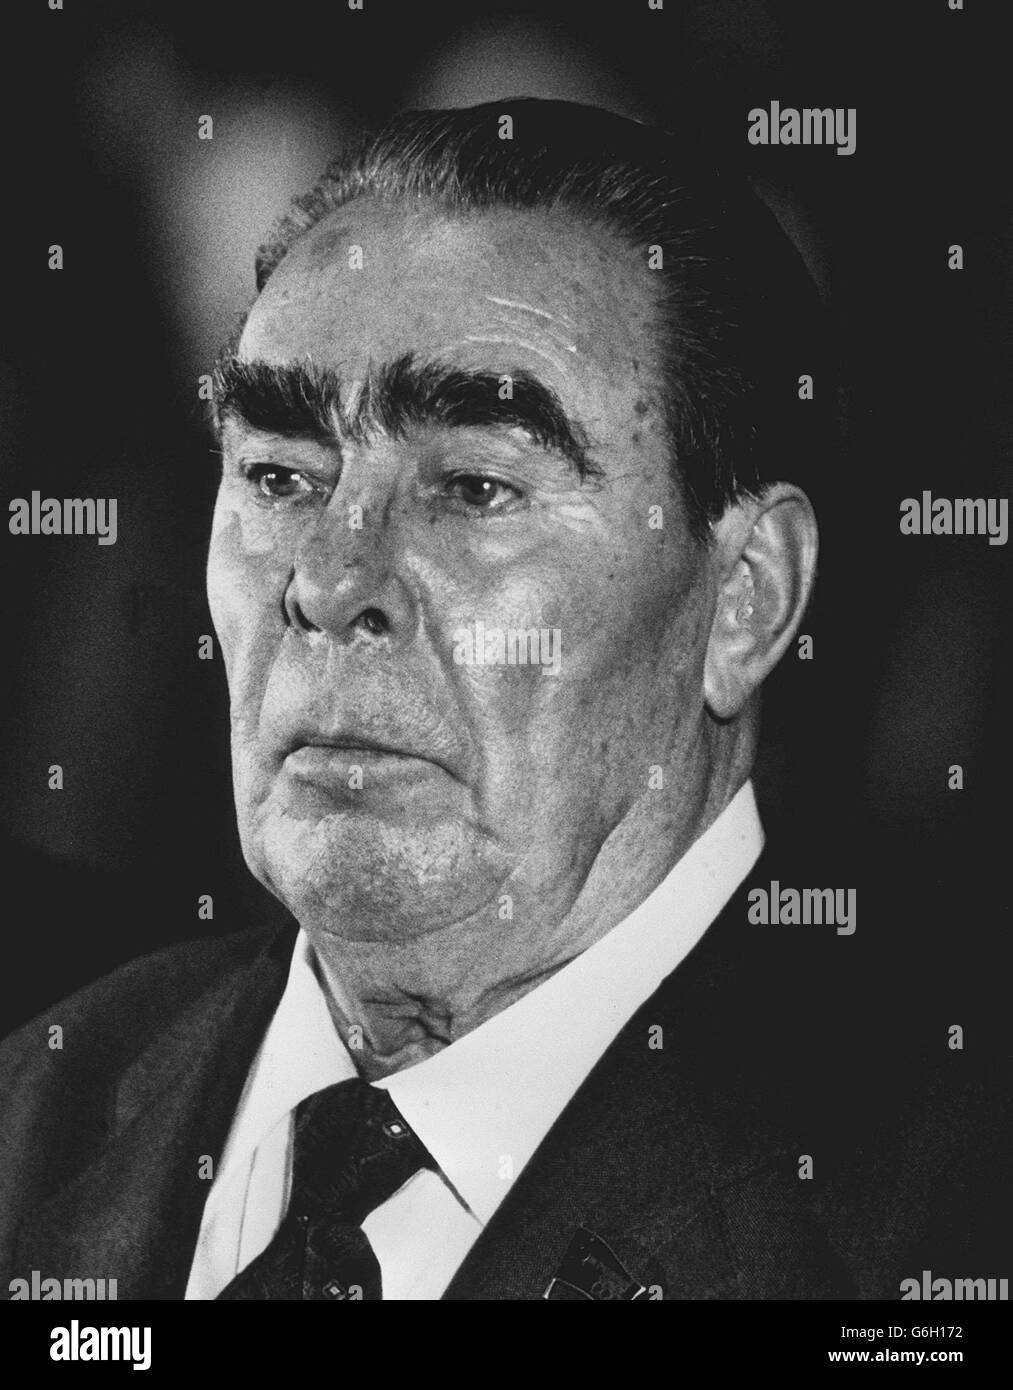 15 OTTOBRE: IN QUESTO GIORNO DEL 1964, LEONID BREZHNEV DEPOSE NIKITA KRUSCHEV DI DIVENTARE LEADER DELLA RUSSIA SOVIETICA. KRUSCHEV È STATO IN VACANZA QUANDO HA SENTITO l'Ucraina nato leader sovietico Leonid Brezhnev, che è stato Segretario Generale del Partito Comunista sovietico dal 1966. 11/11/1982: Muore Brezhnev. Foto Stock